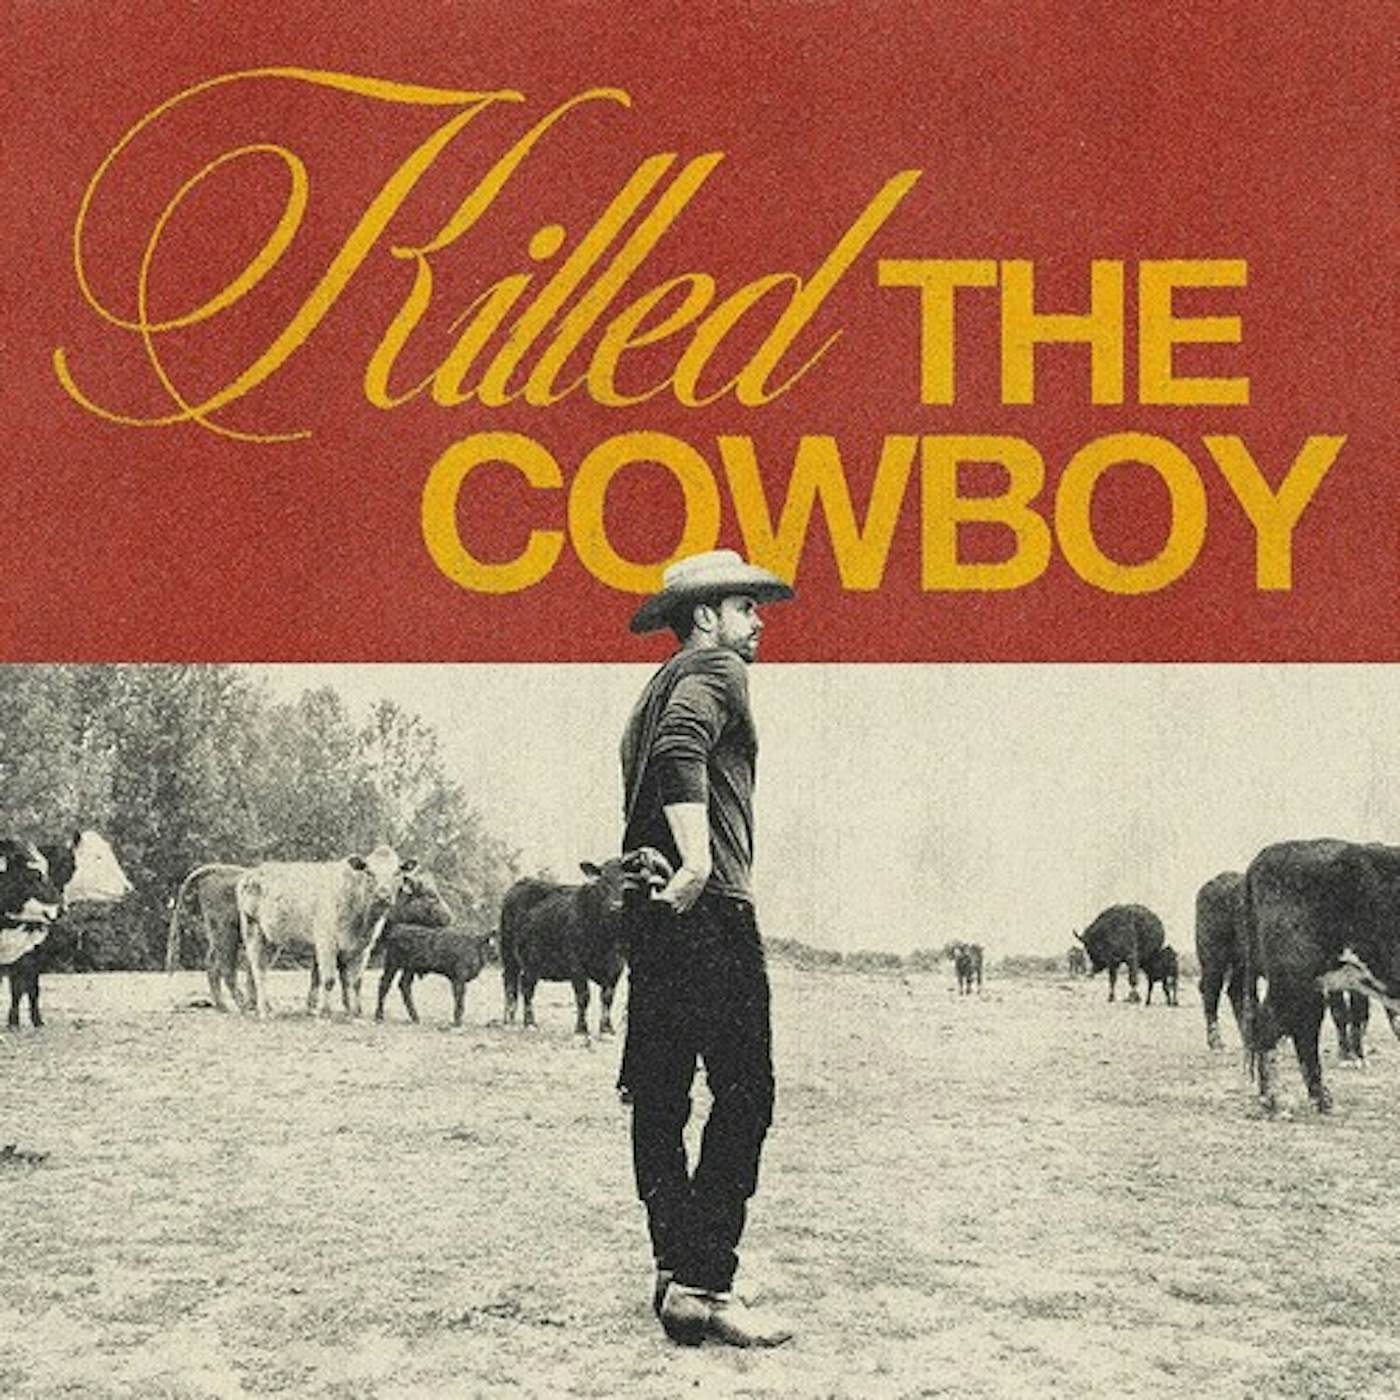 Dustin Lynch KILLED THE COWBOY CD